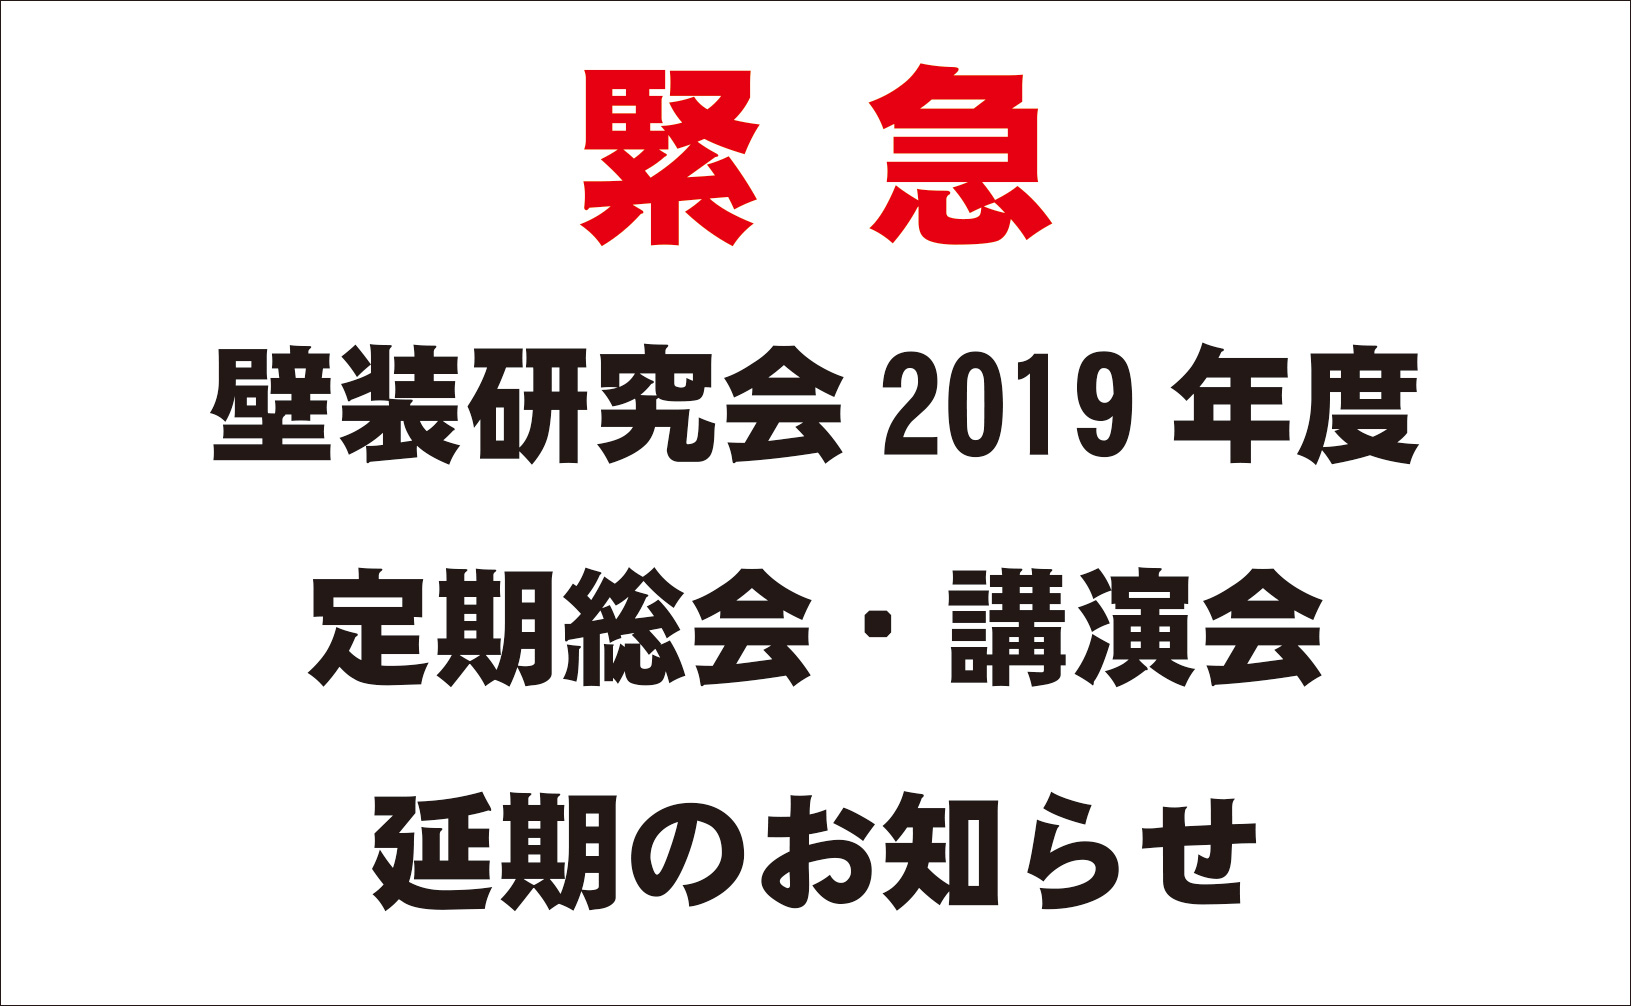 【緊急】壁装研究会2019年度定期総会・講演会 延期のお知らせ